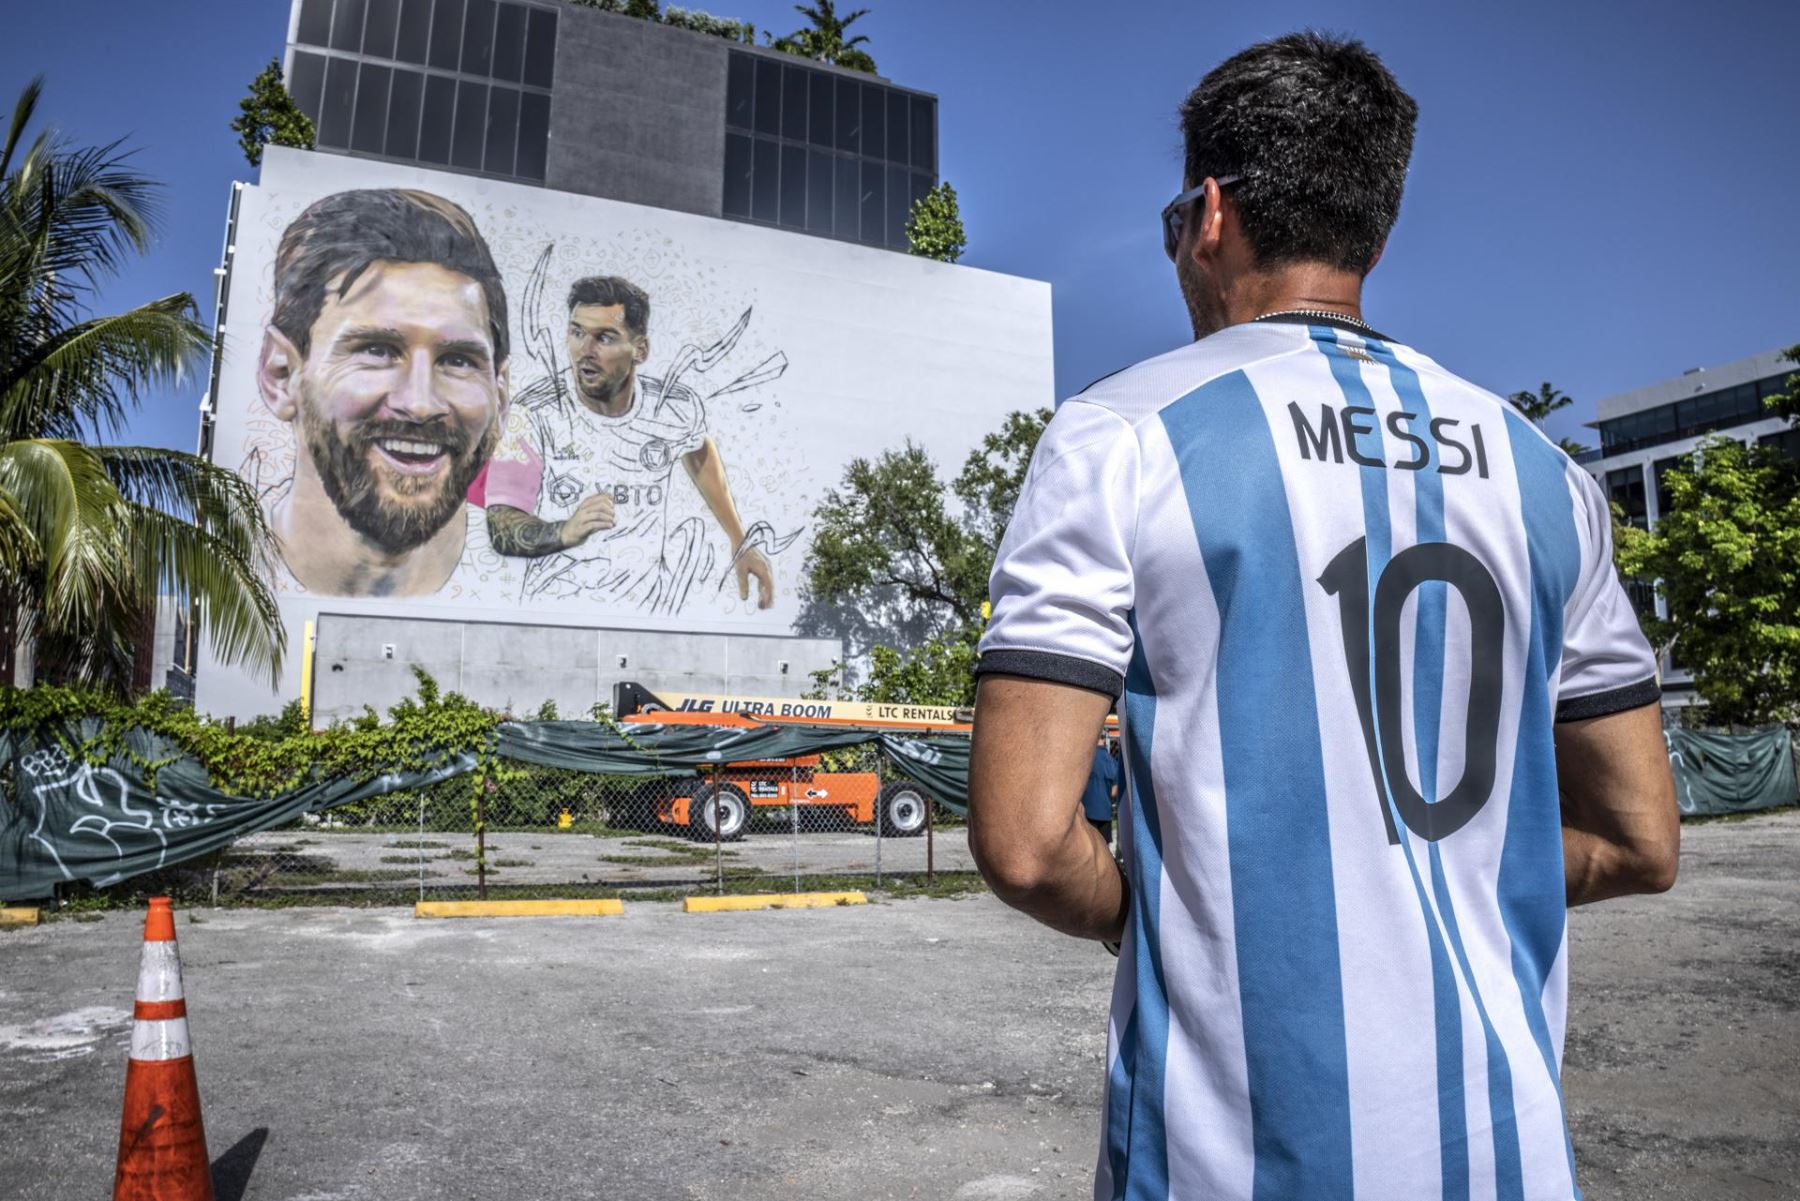 Un fan se para frente a un mural del futbolista argentino Lionel Messi que está siendo pintado por el artista argentino Maximiliano Bagnasco, en un alto muro de siete pisos en Wynwood, Florida, EE.UU.
Foto: EFE